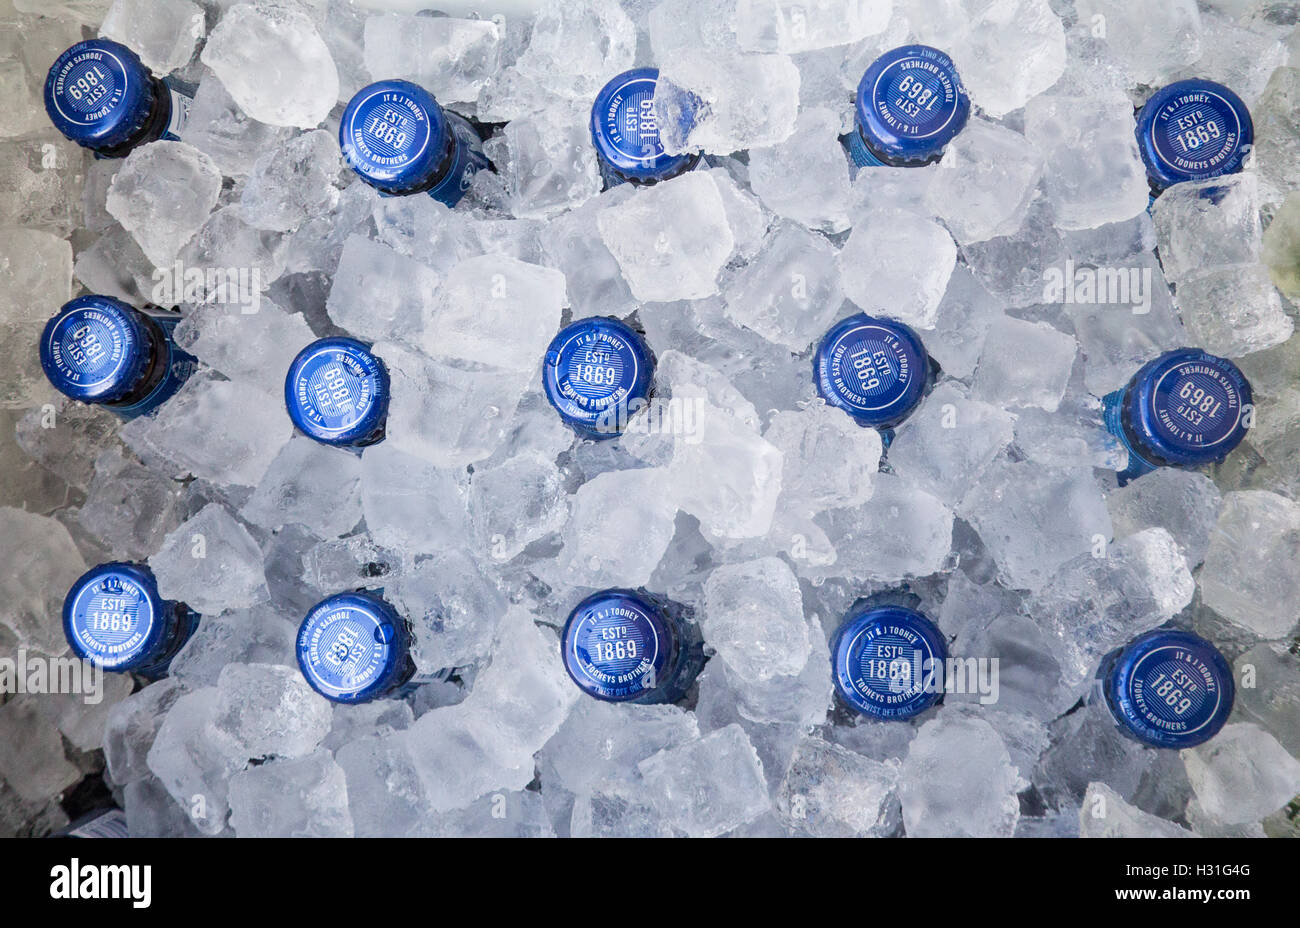 Bottiglia di birra tops in cubetti di ghiaccio in esky frigo portatile frigorifero unità NSW Australia Foto Stock